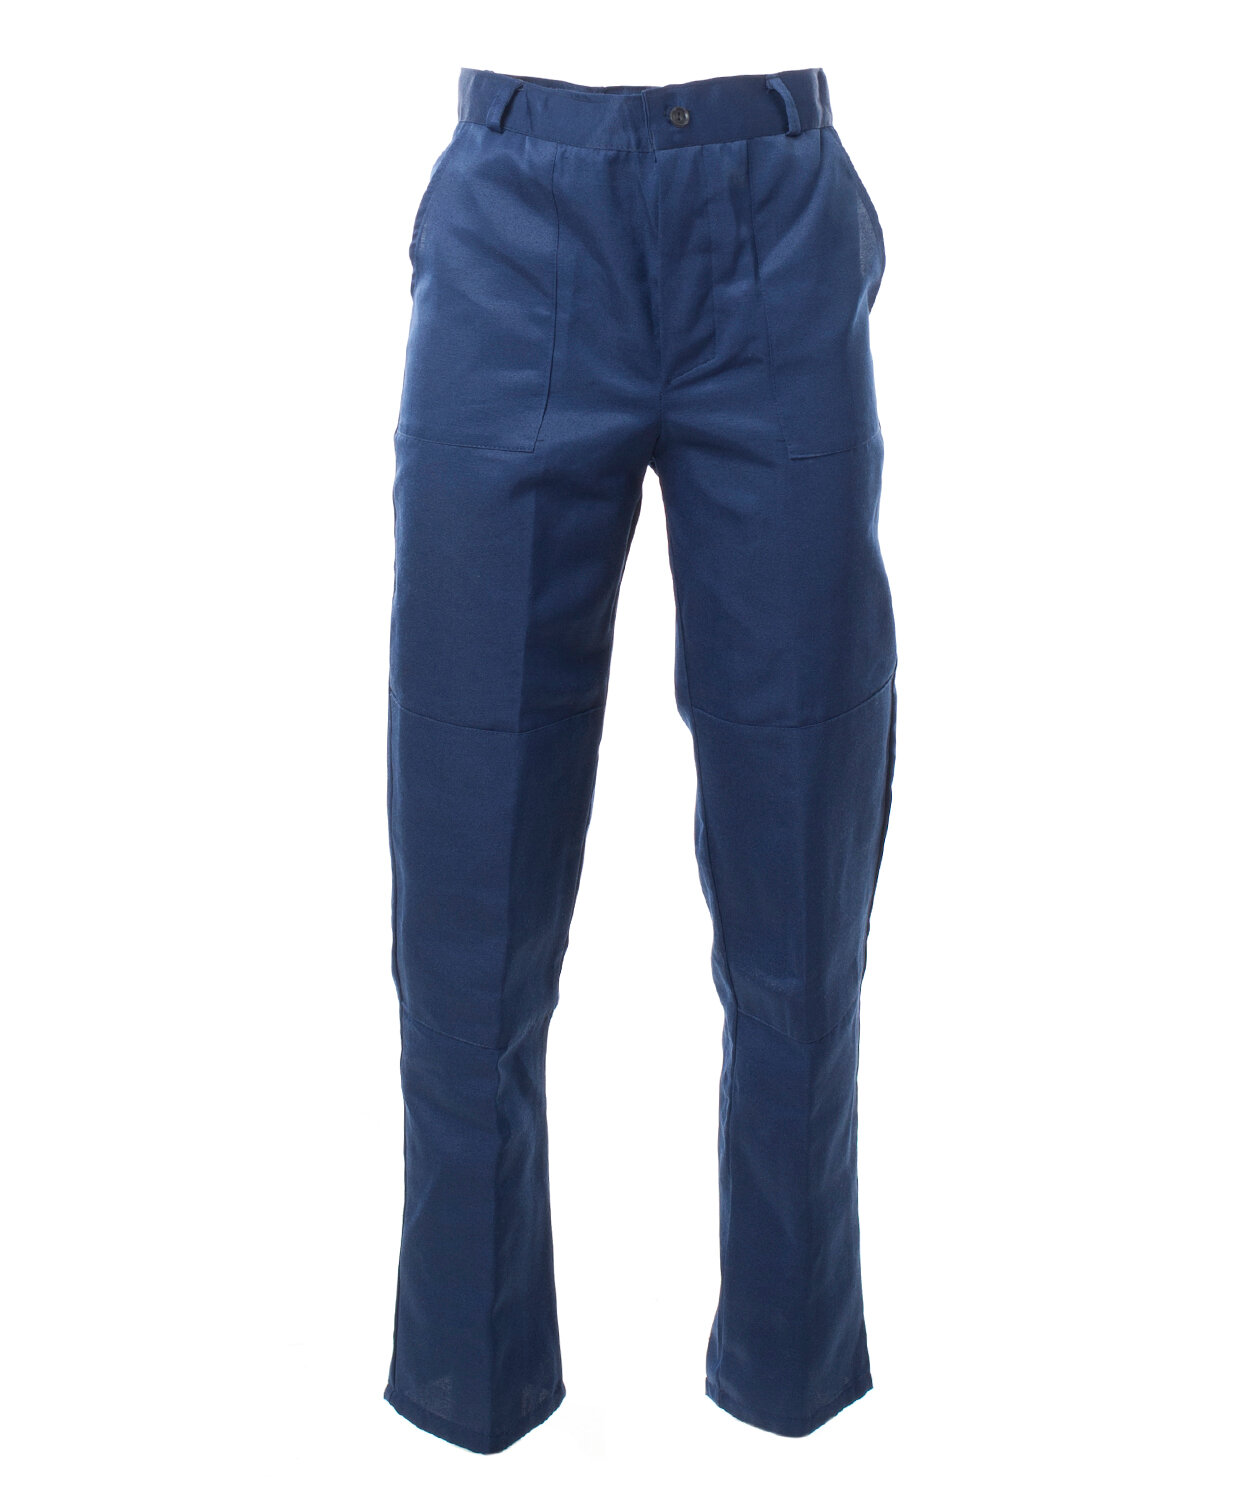 Костюм мужской «Стандарт» с СОП куртка, брюки цвет: т. синий, васильковый (56-58)112-116, 170-176